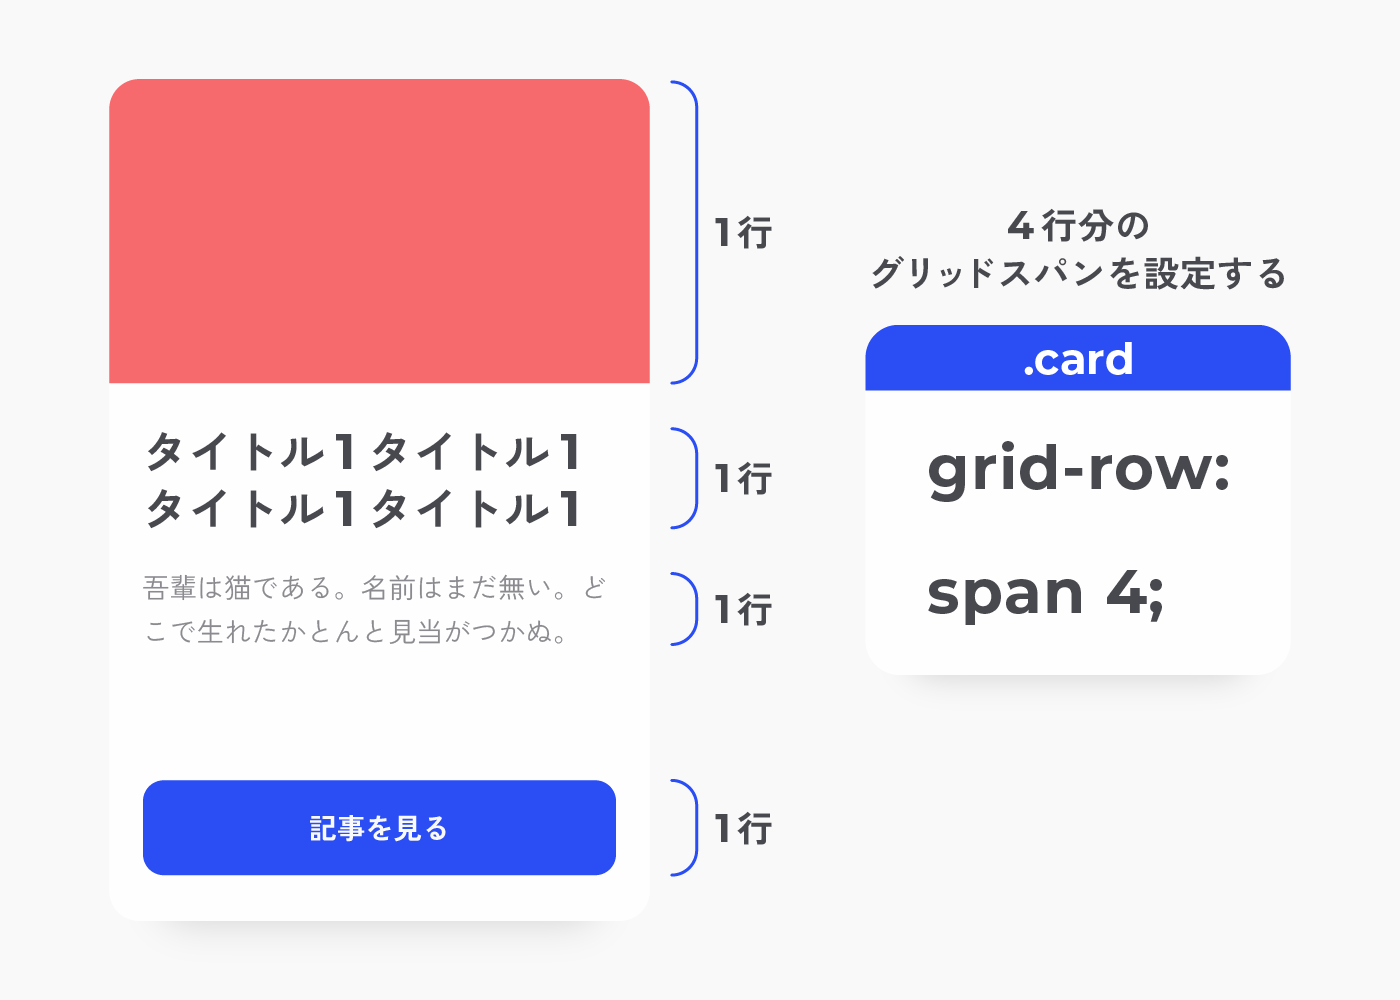 grid-row: span 4;について解説